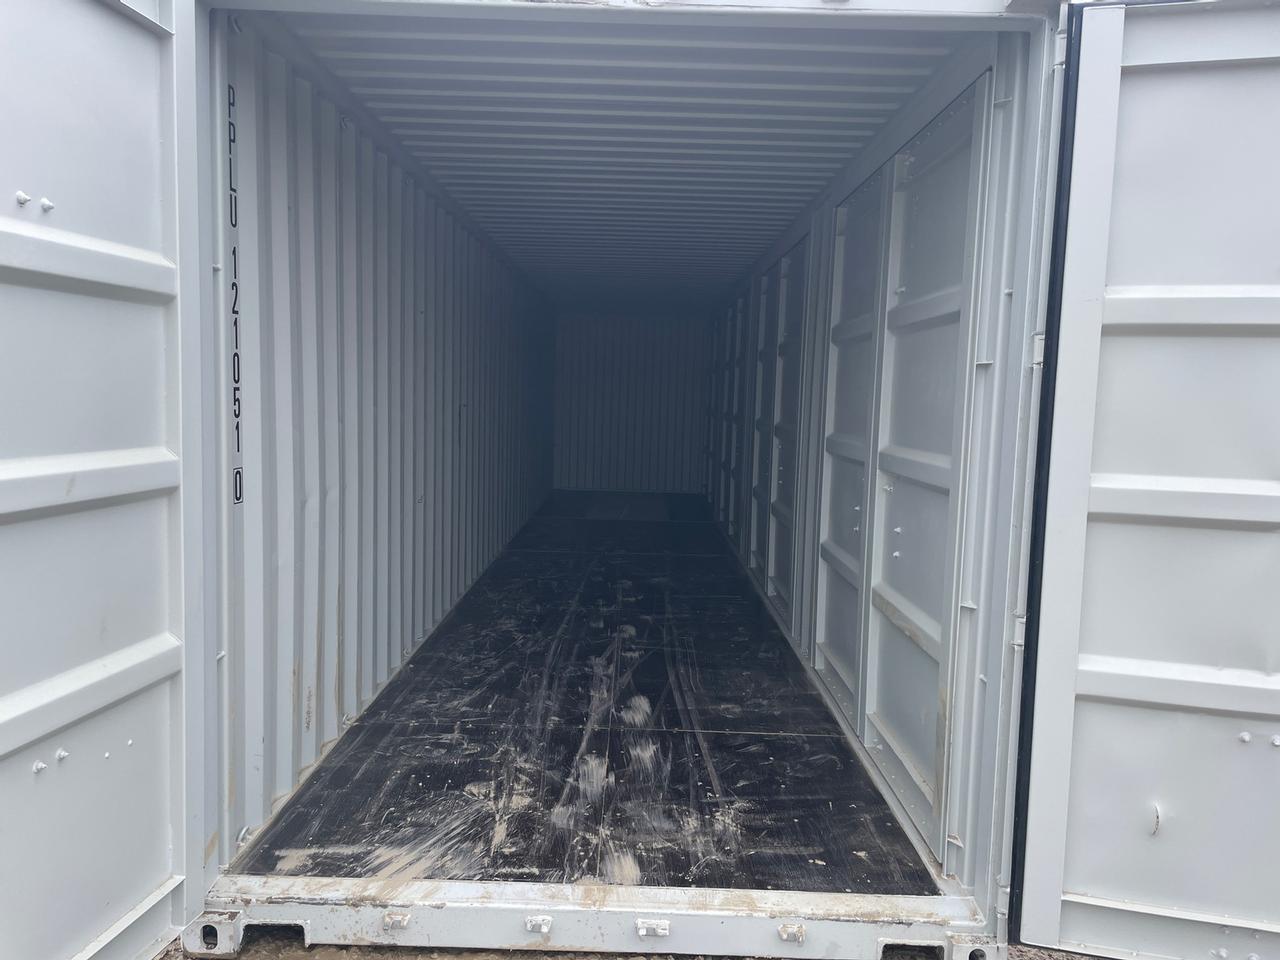 40' Multi Door Sea Container